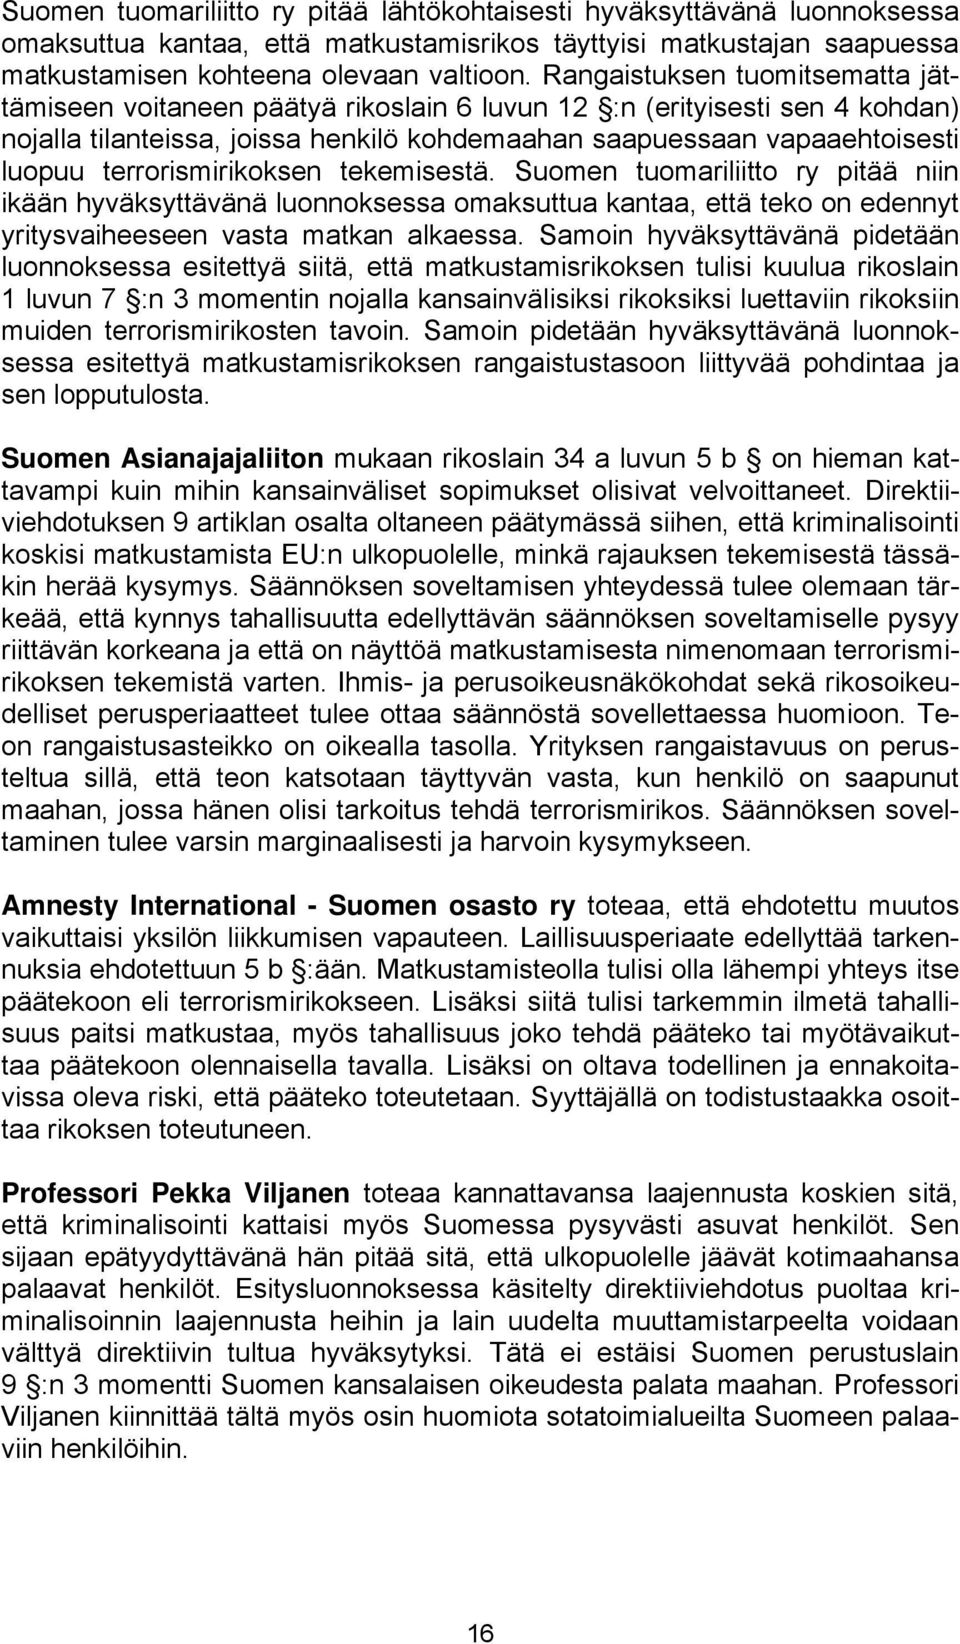 terrorismirikoksen tekemisestä. Suomen tuomariliitto ry pitää niin ikään hyväksyttävänä luonnoksessa omaksuttua kantaa, että teko on edennyt yritysvaiheeseen vasta matkan alkaessa.